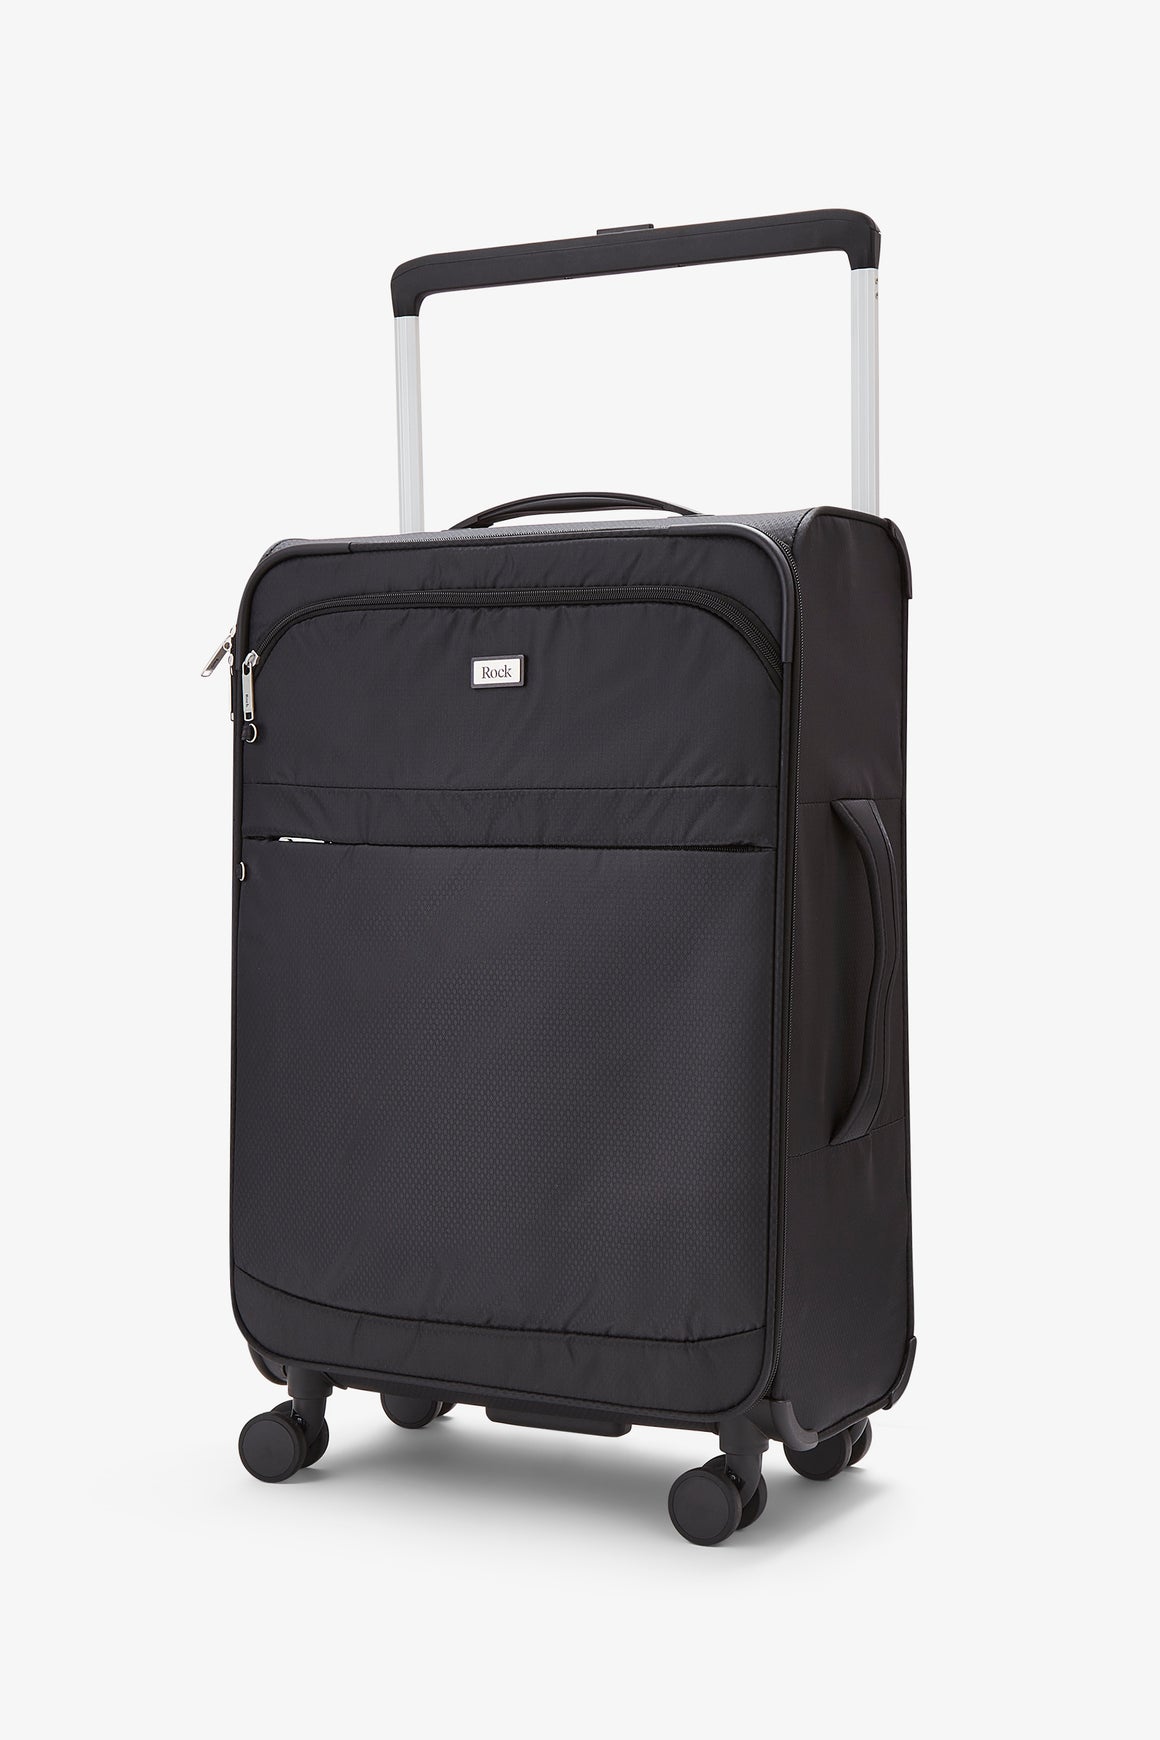 Rocklite Medium Suitcase